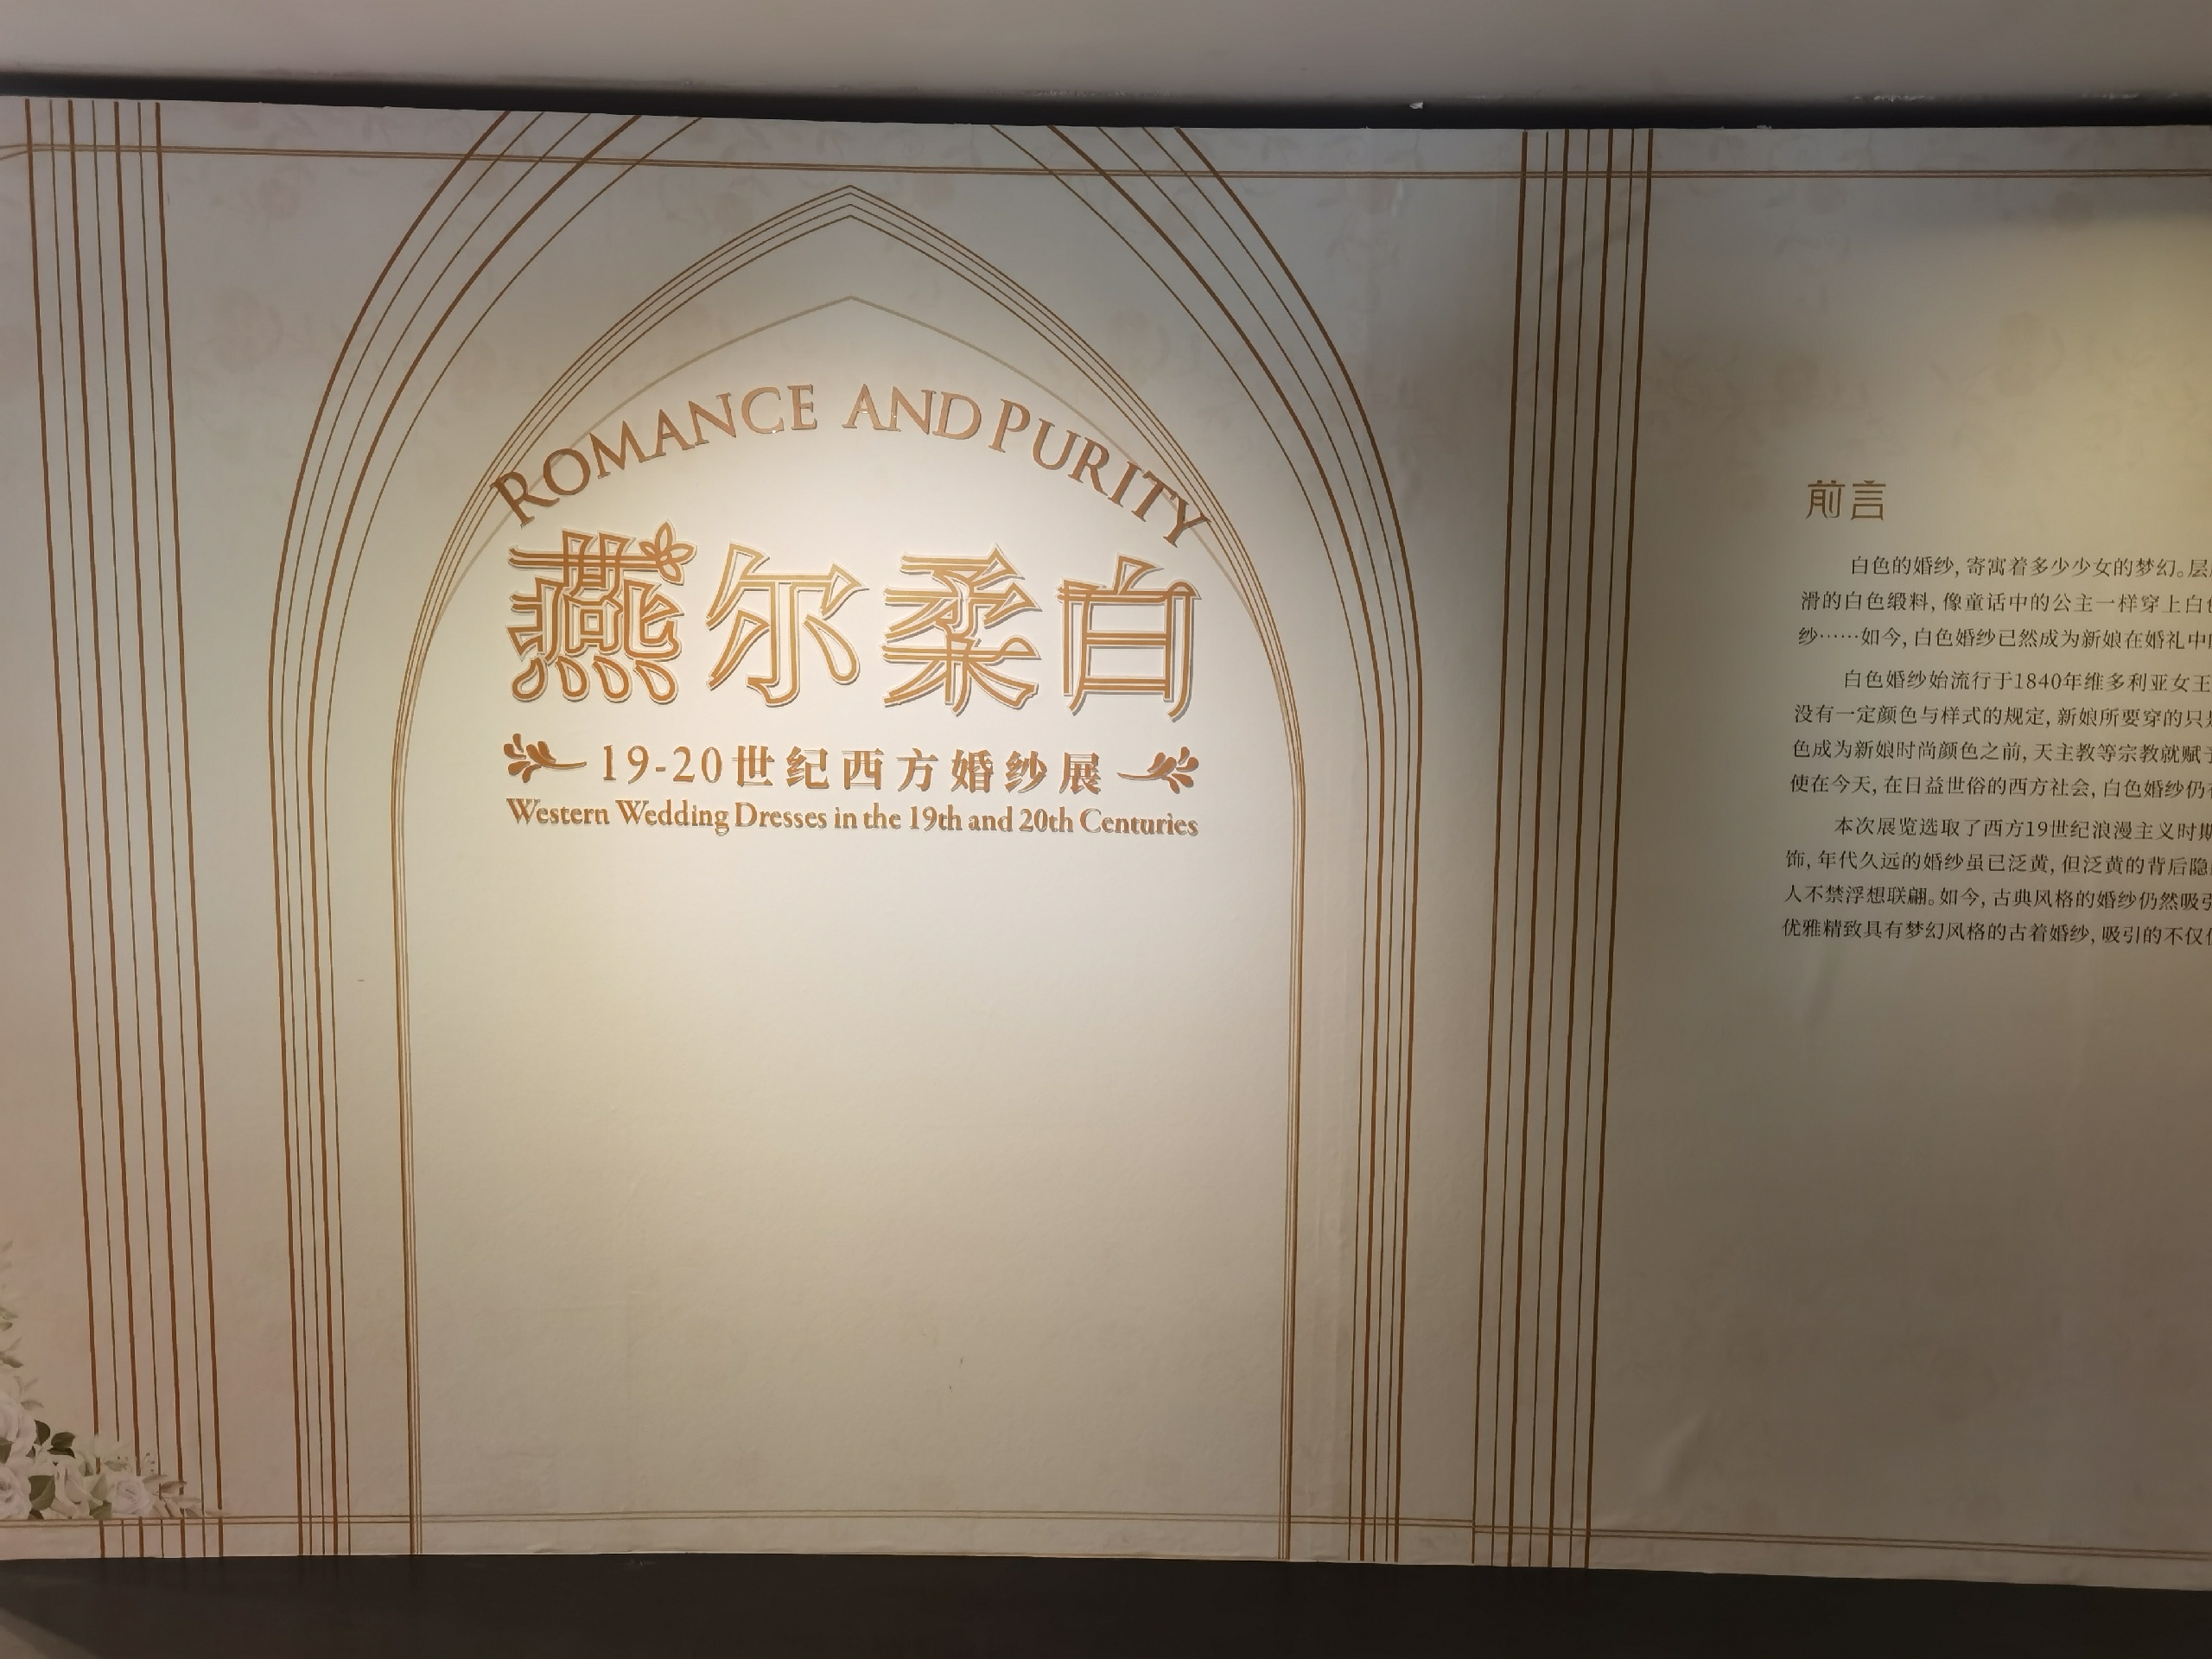 浙江丝绸博物馆——平时见不到的19-20世纪西方婚纱展